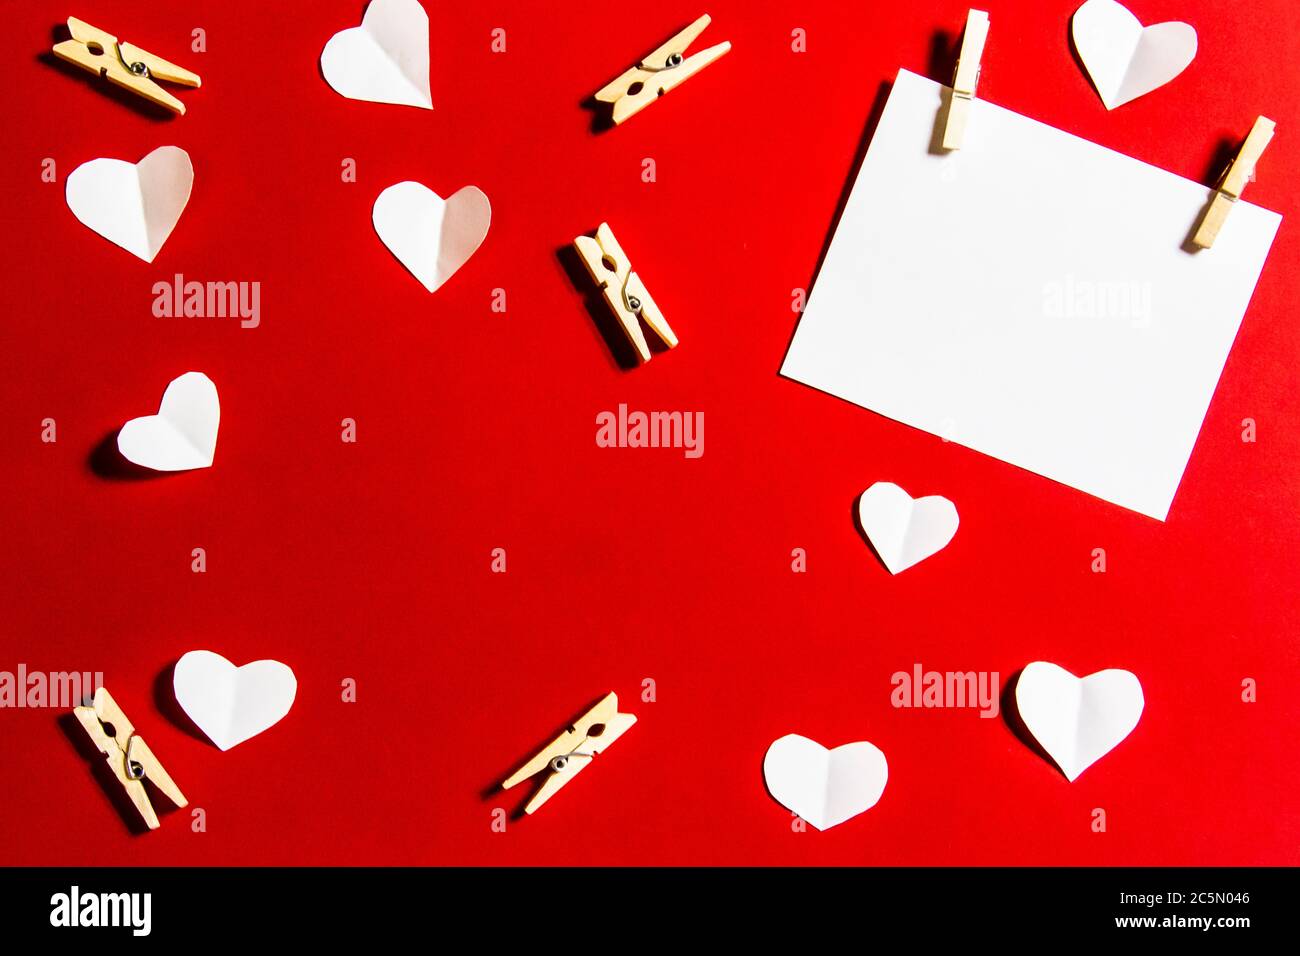 Komposition für Valentinstag. Wäscheklammern, Herzen und Papier für die Note vor einem roten Hintergrund. Elemente für Design oder Karte. Stockfoto